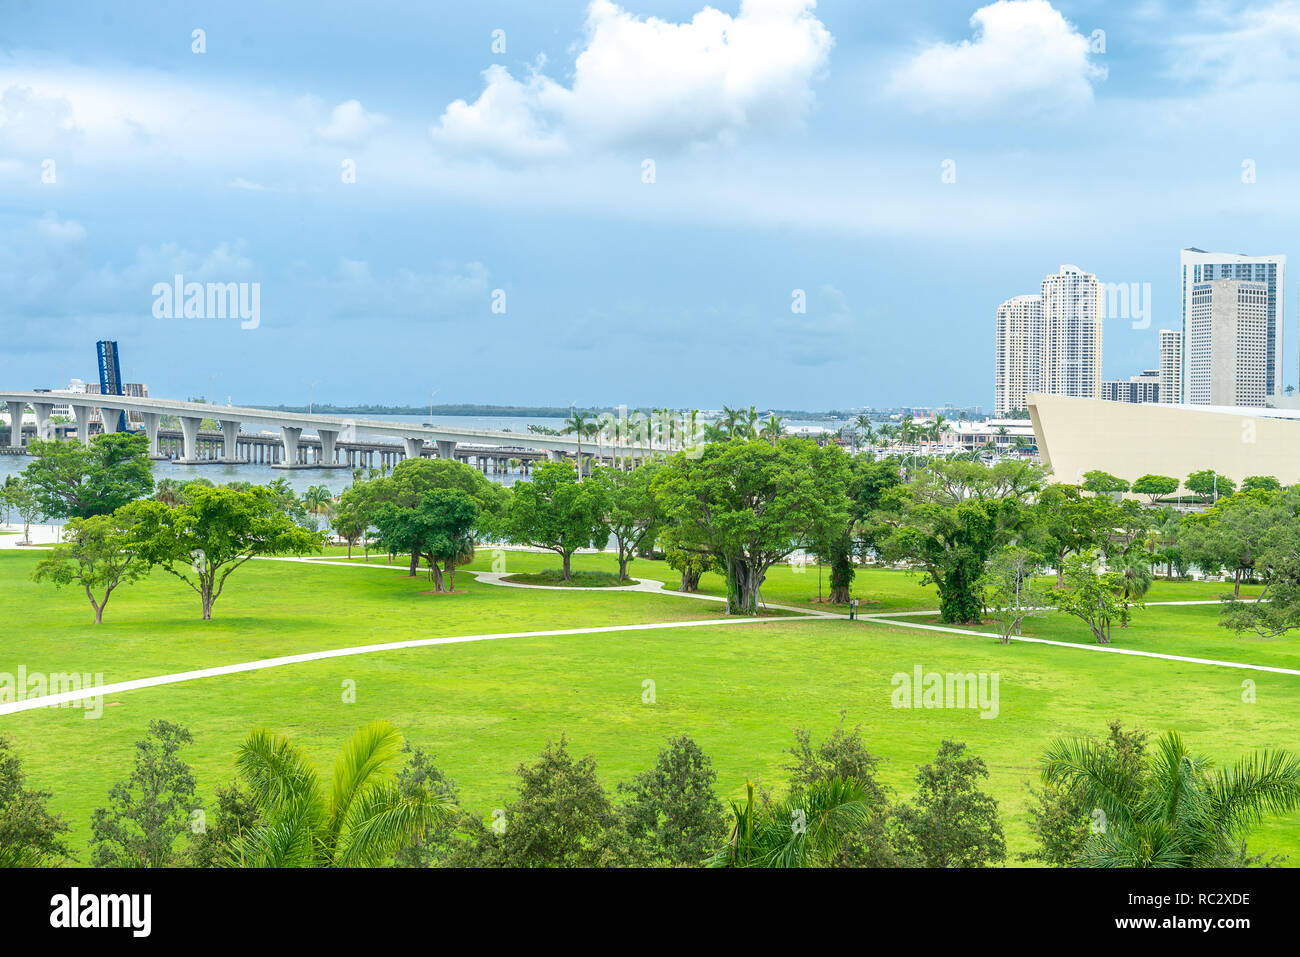 Miami, USA - jun 10, 2018: Skyline of Miami city from the museum park Stock Photo